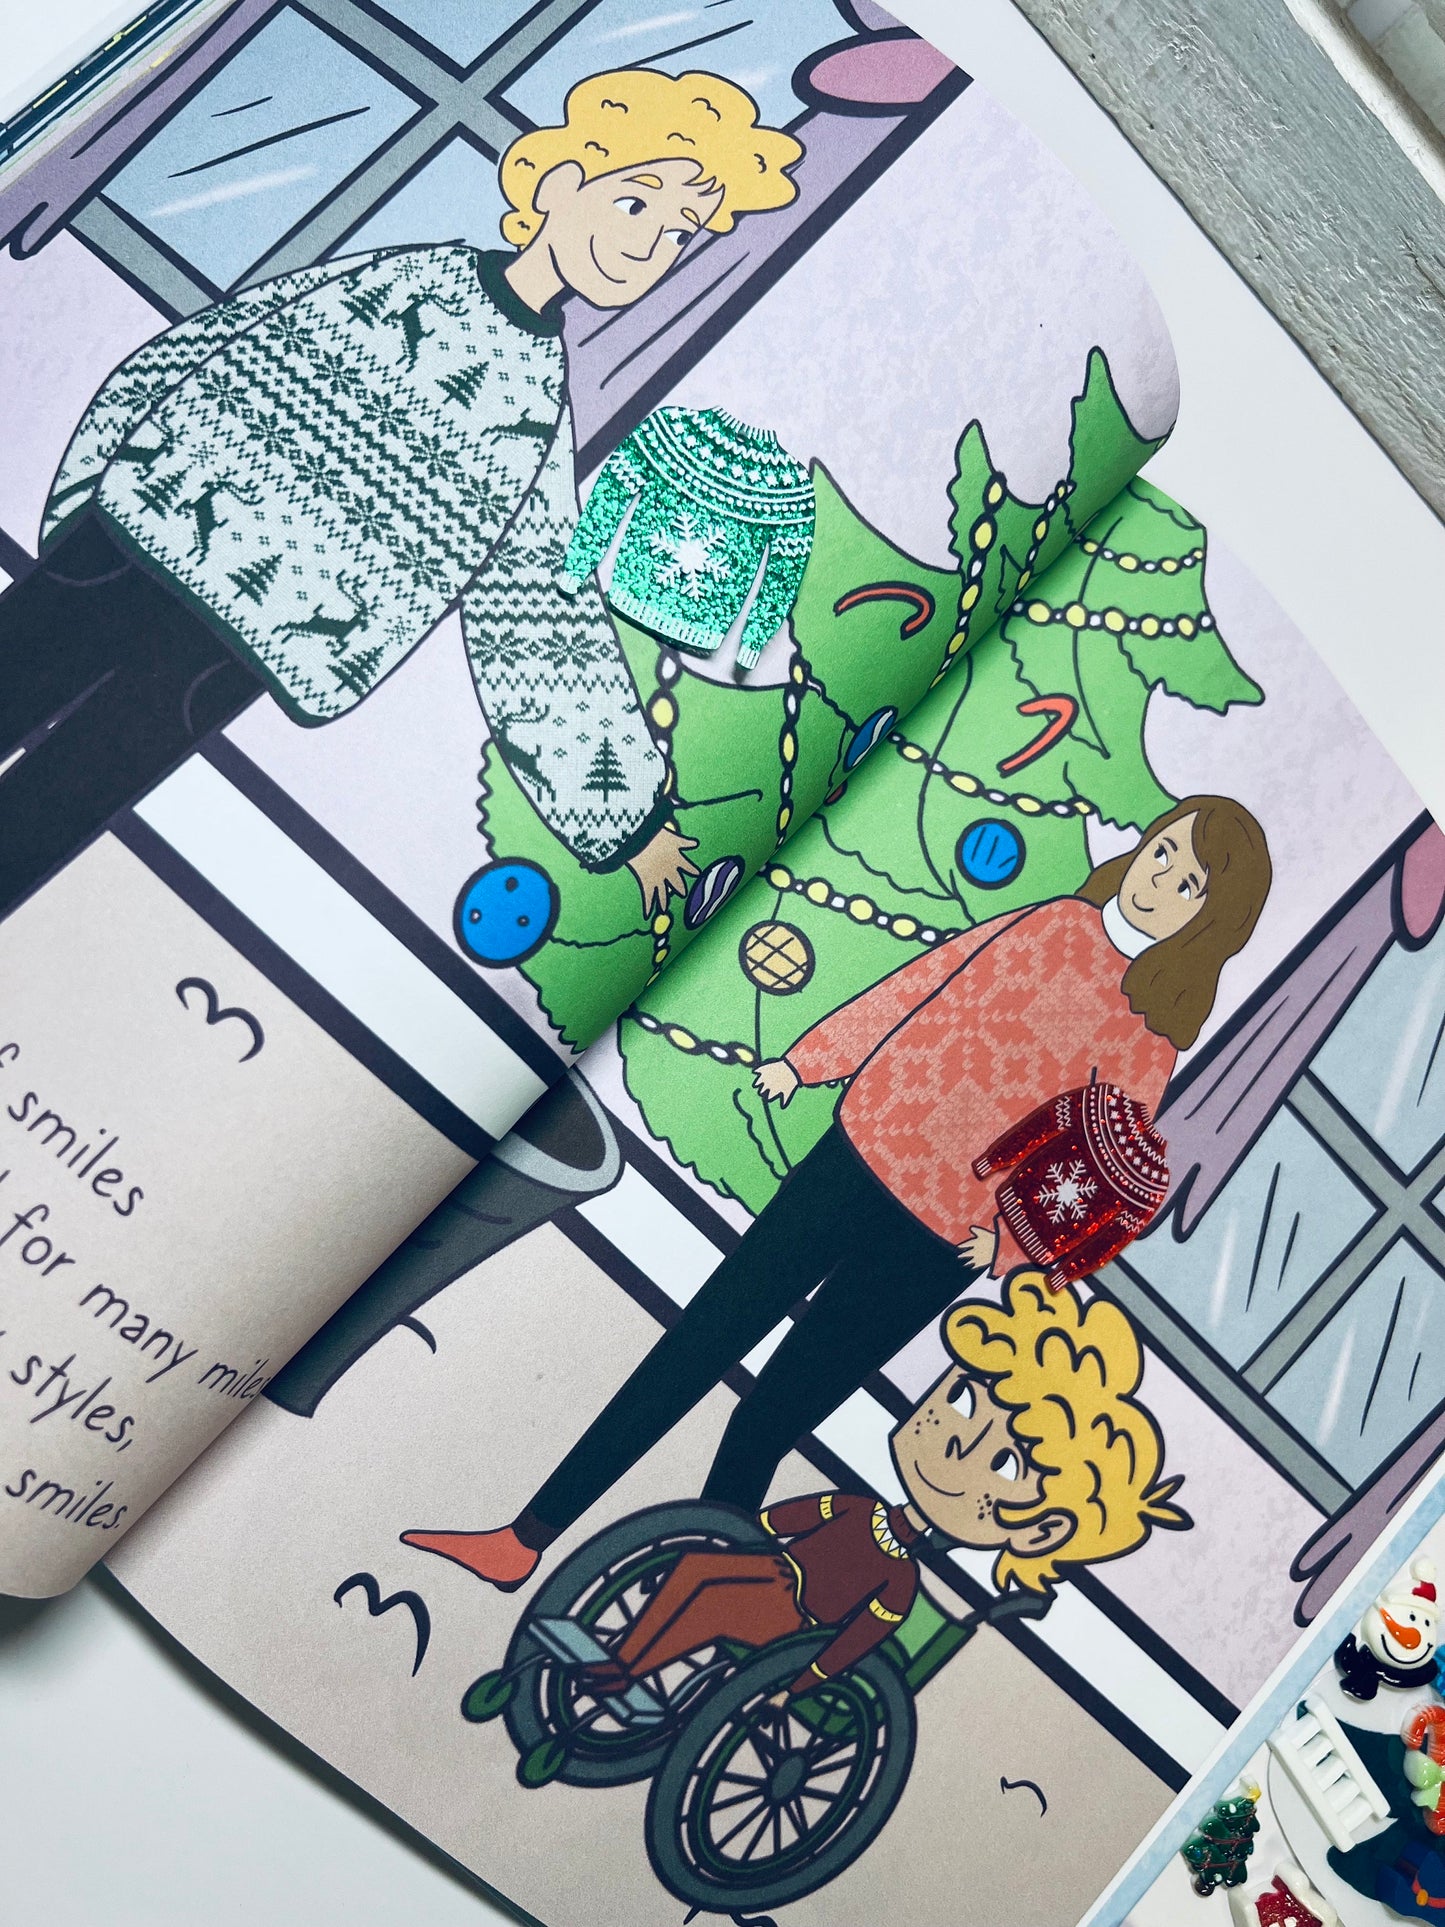 Kit de cuentos navideños para una misión muy feliz Inclusión Libro de Navidad-Baratijas-Libro inclusivo-Terapia del habla Mini objetos-Libro regalo